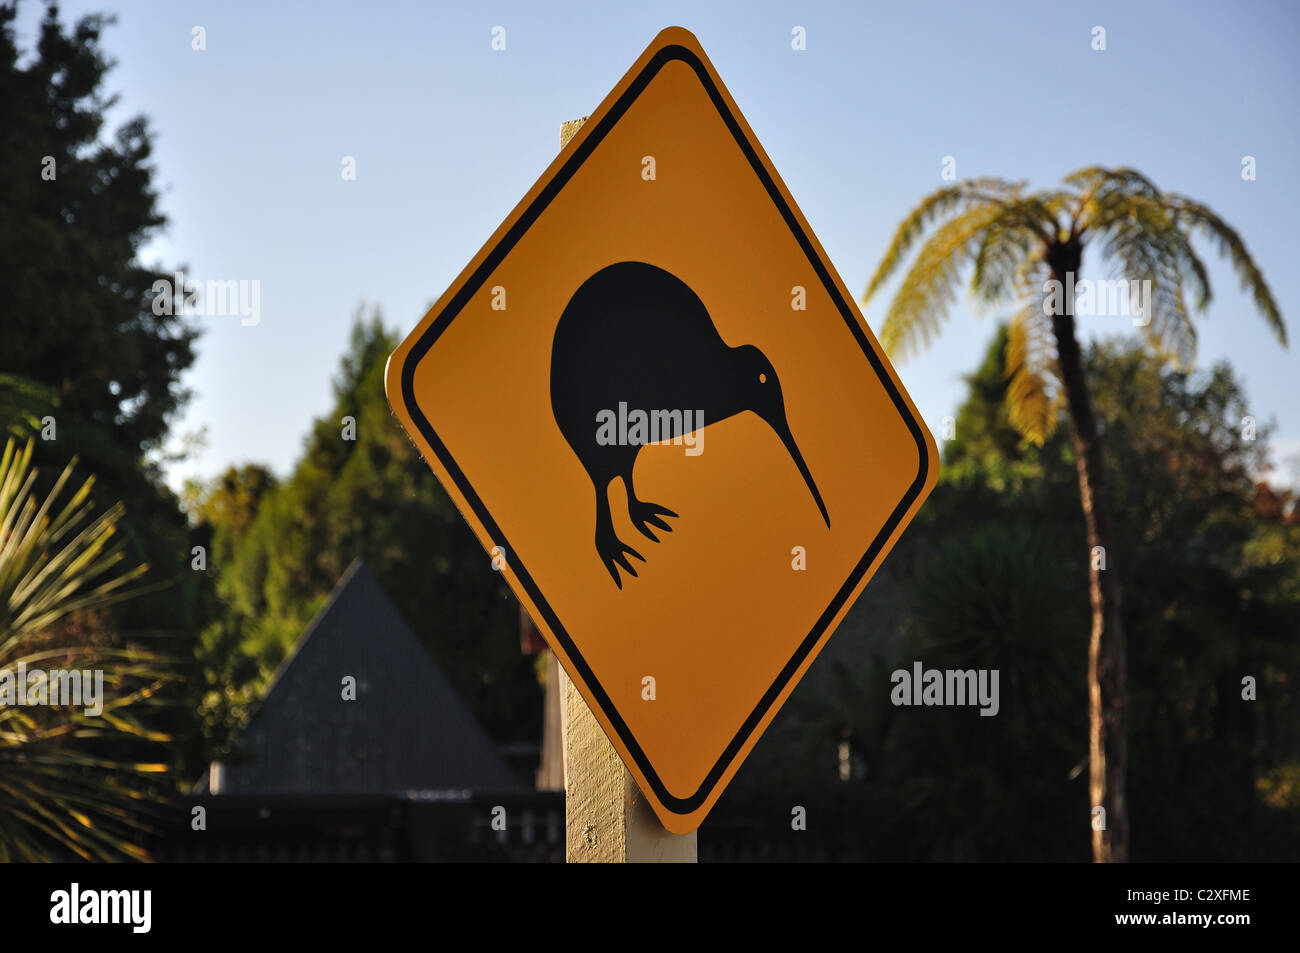 Kiwi road sign, près de Rotorua, Bay of Plenty, North Island, New Zealand Banque D'Images